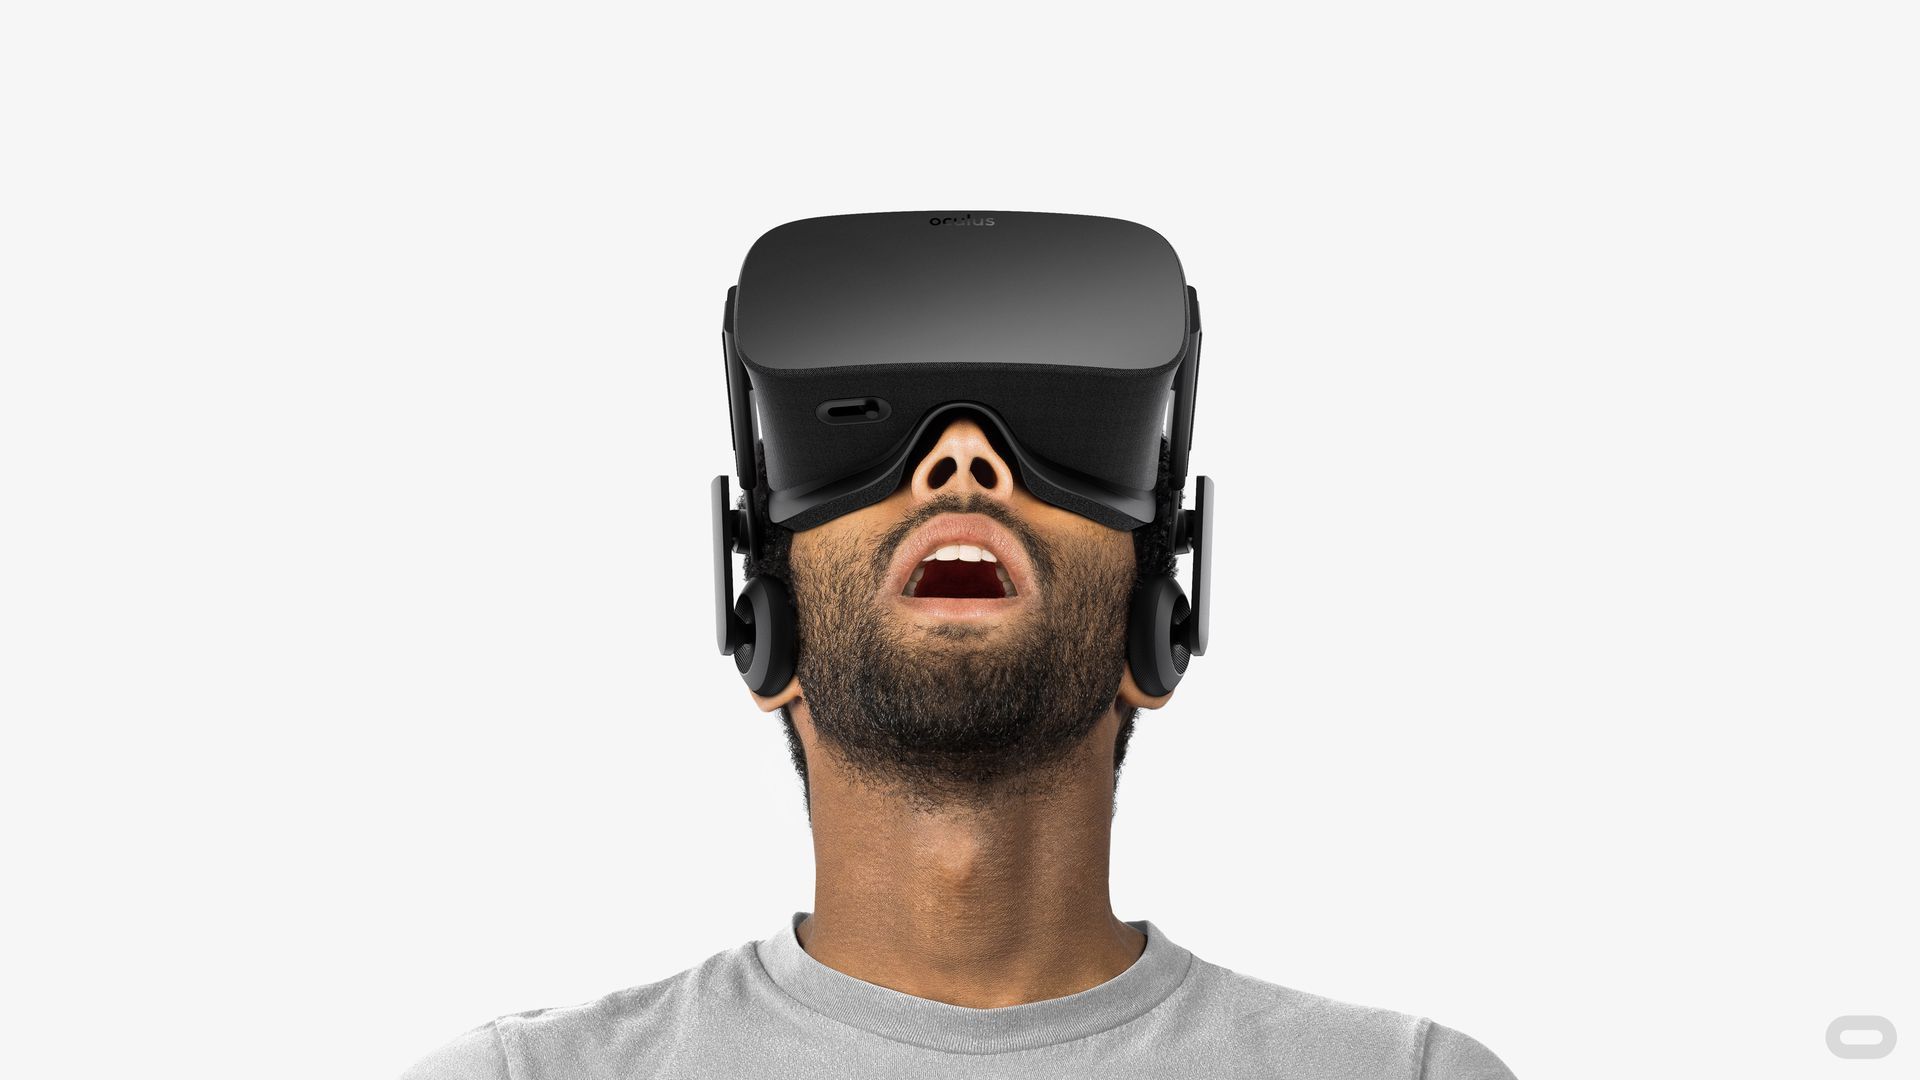 Man wearing an Oculus Rift headset